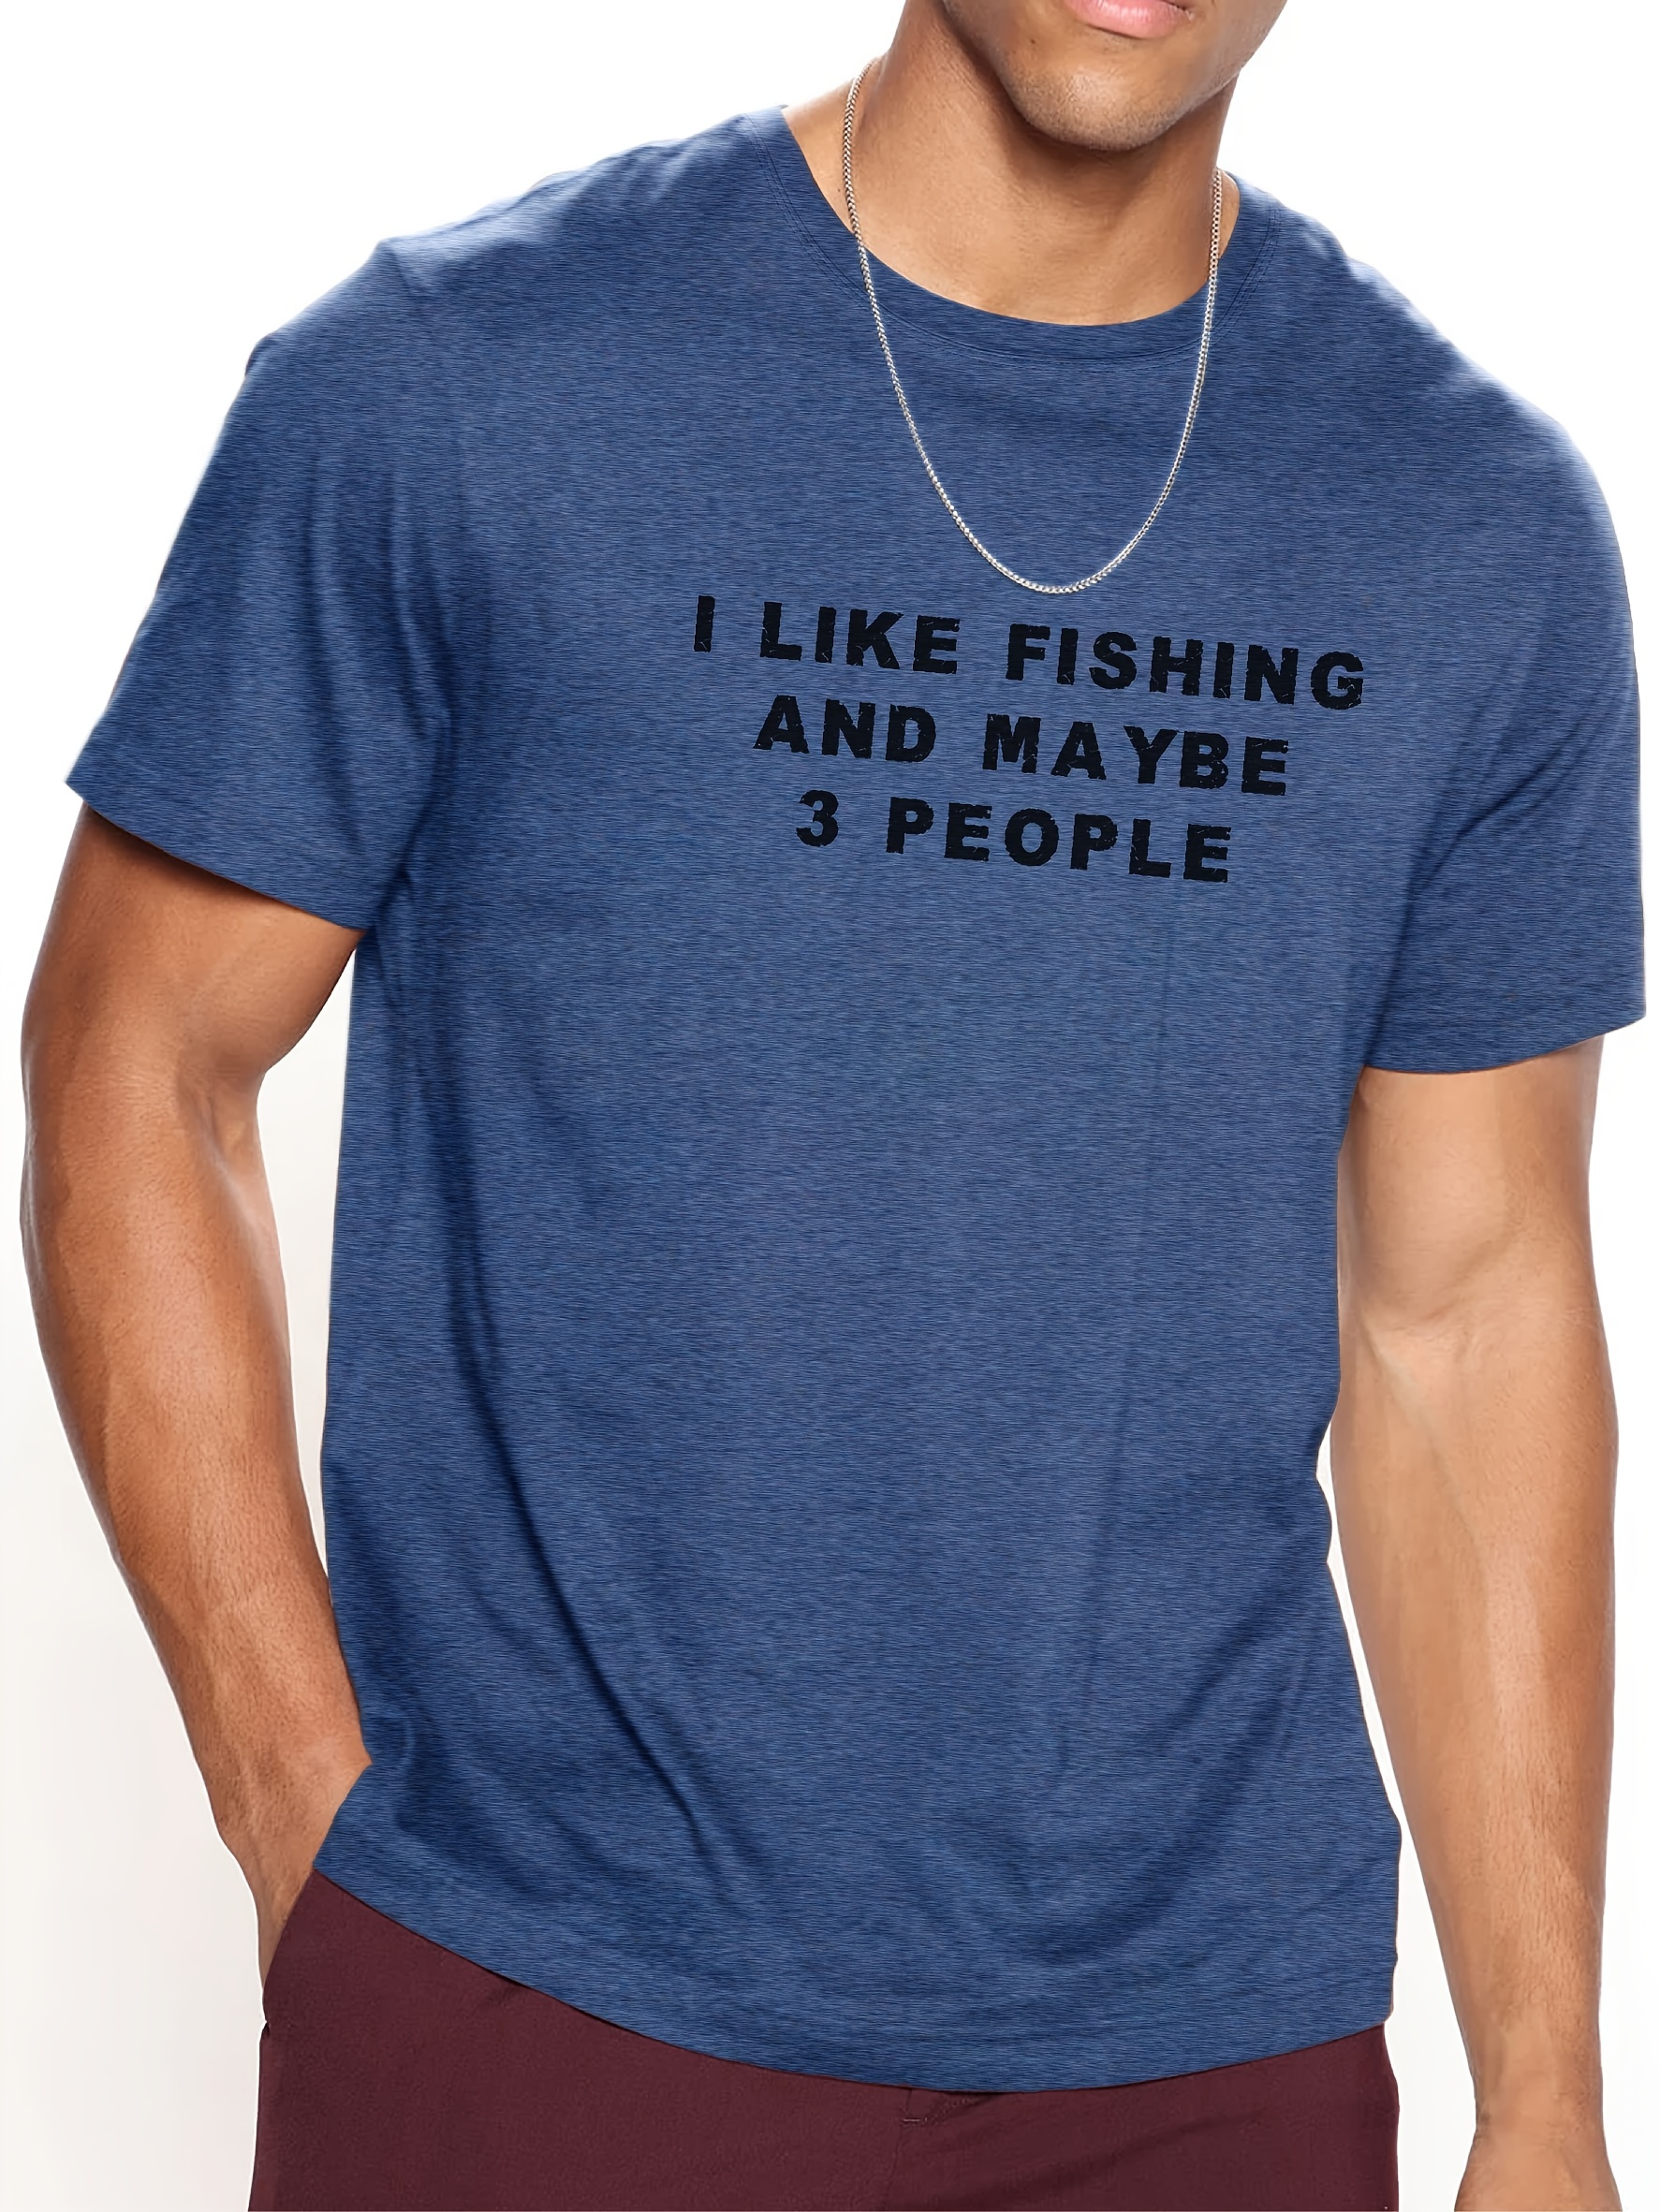 Smart Bass Shirt, Funny Fishing Shirt, Bass Fishing Shirt, Shirt for Dad,  Father's Day Gift, Fishing Gift, Dad Gift, Funny Smart Bass Shirt 